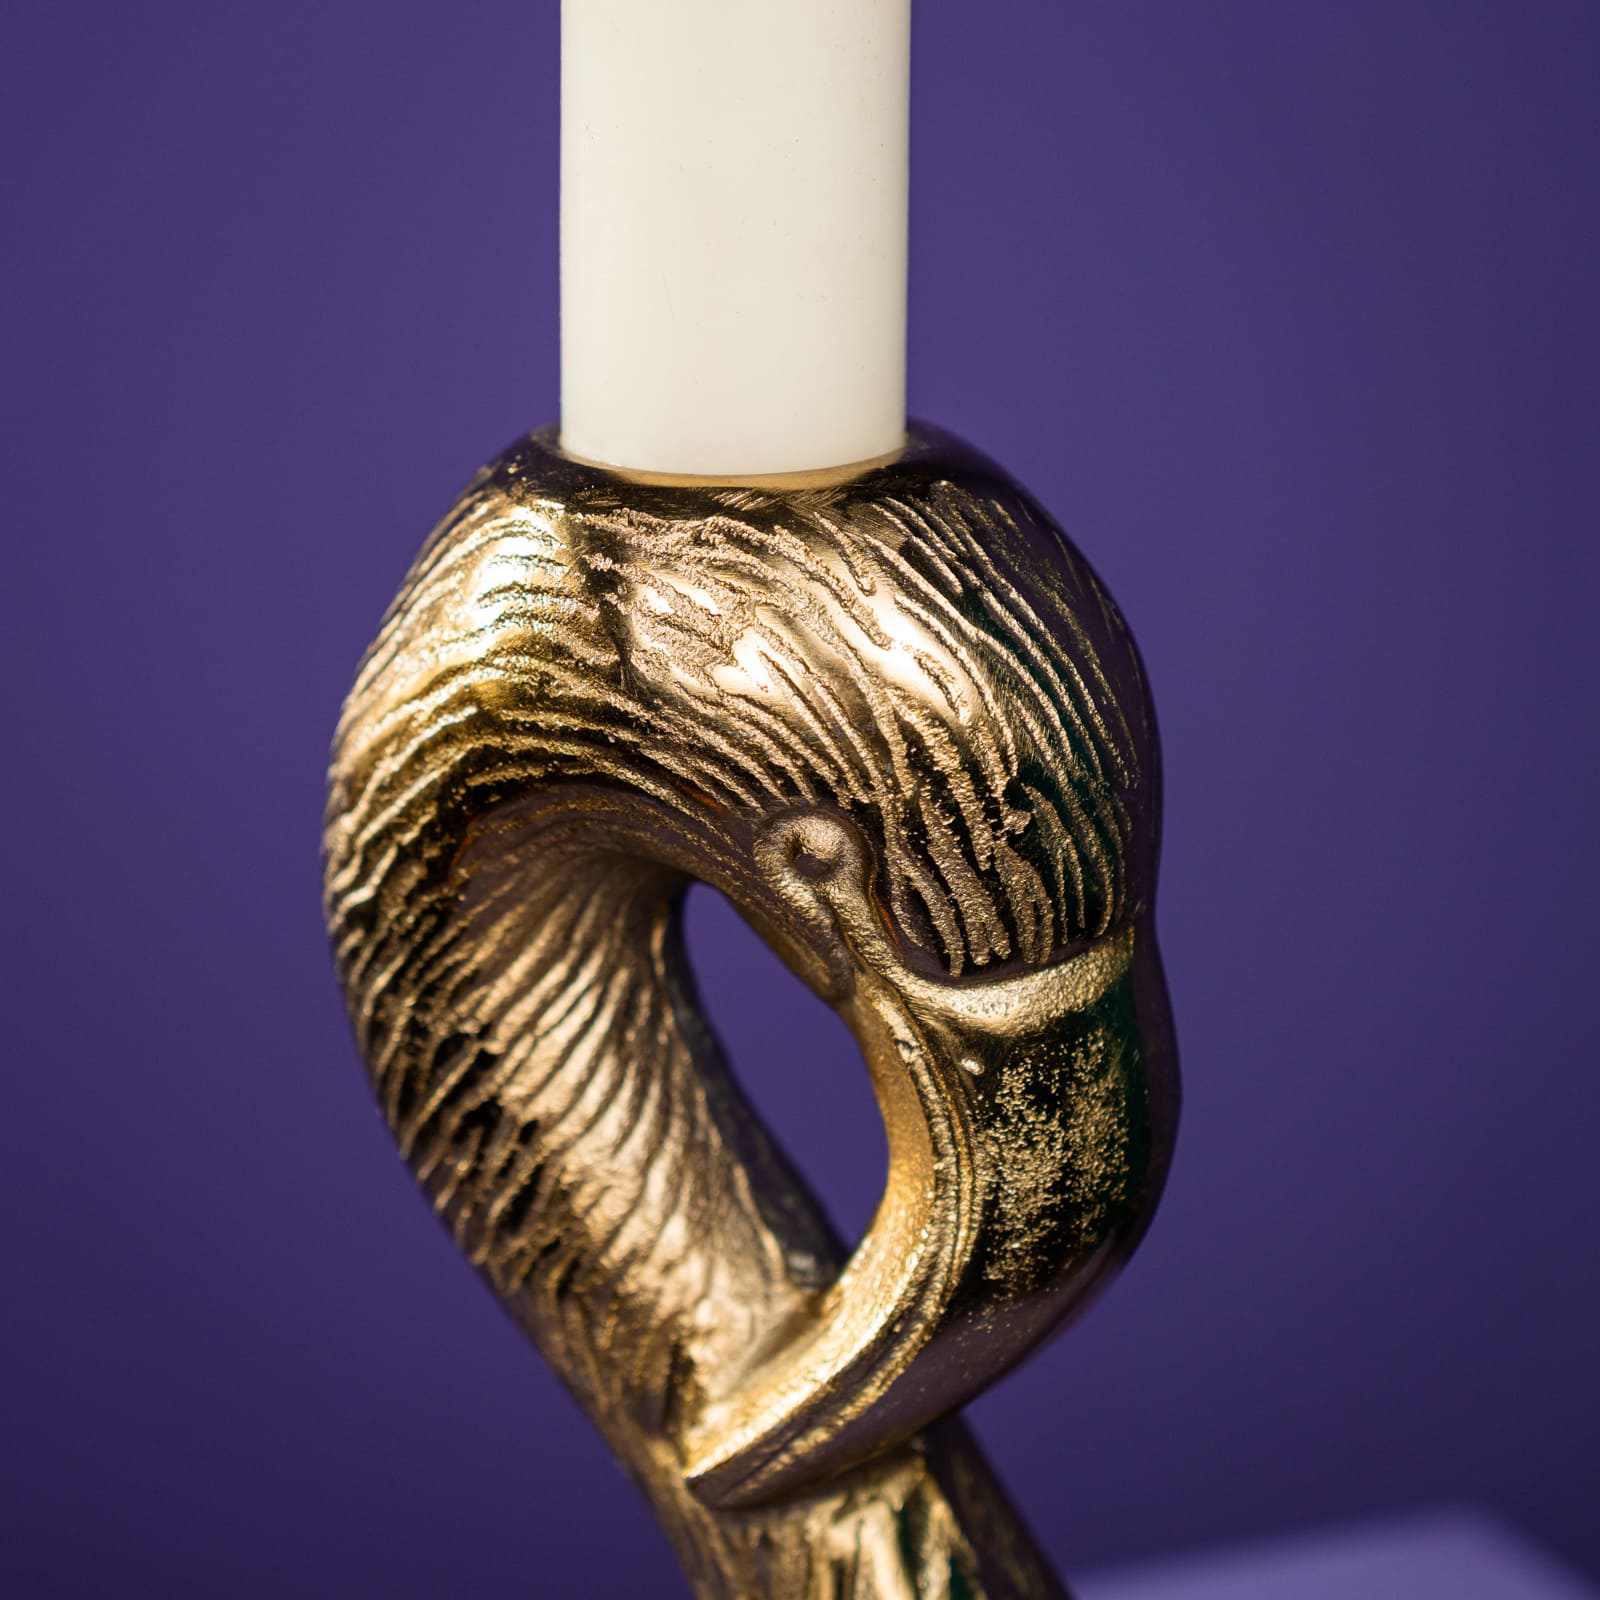 candlestick / candleholder Flamingo, gold 